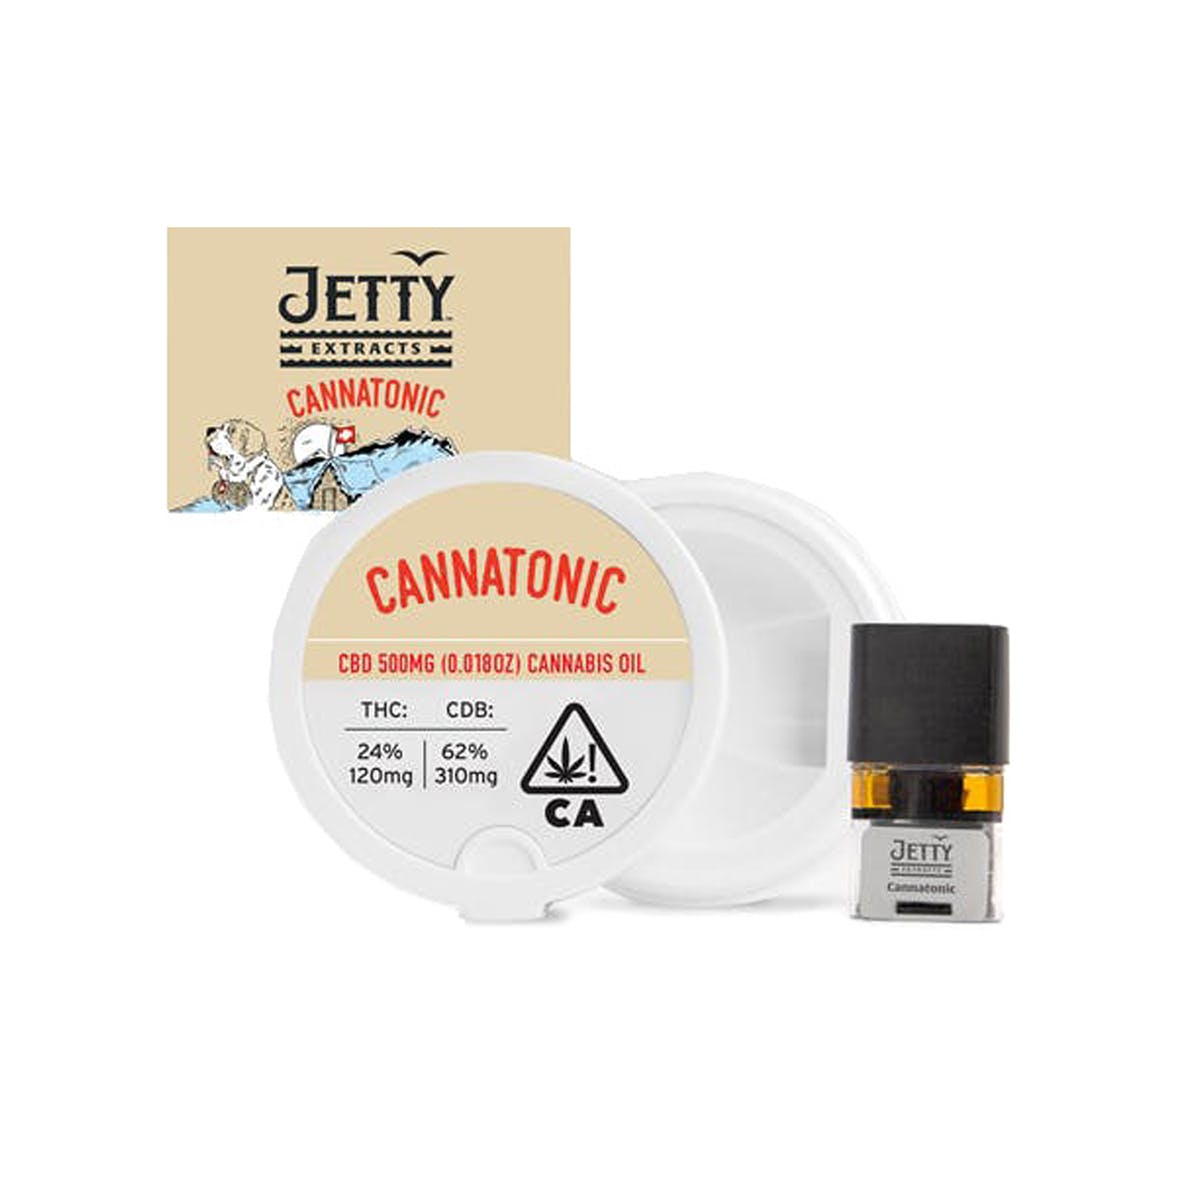 marijuana-dispensaries-10-spot-collective-in-santa-ana-pax-era-pod-jetty-extracts-cannatonic-31